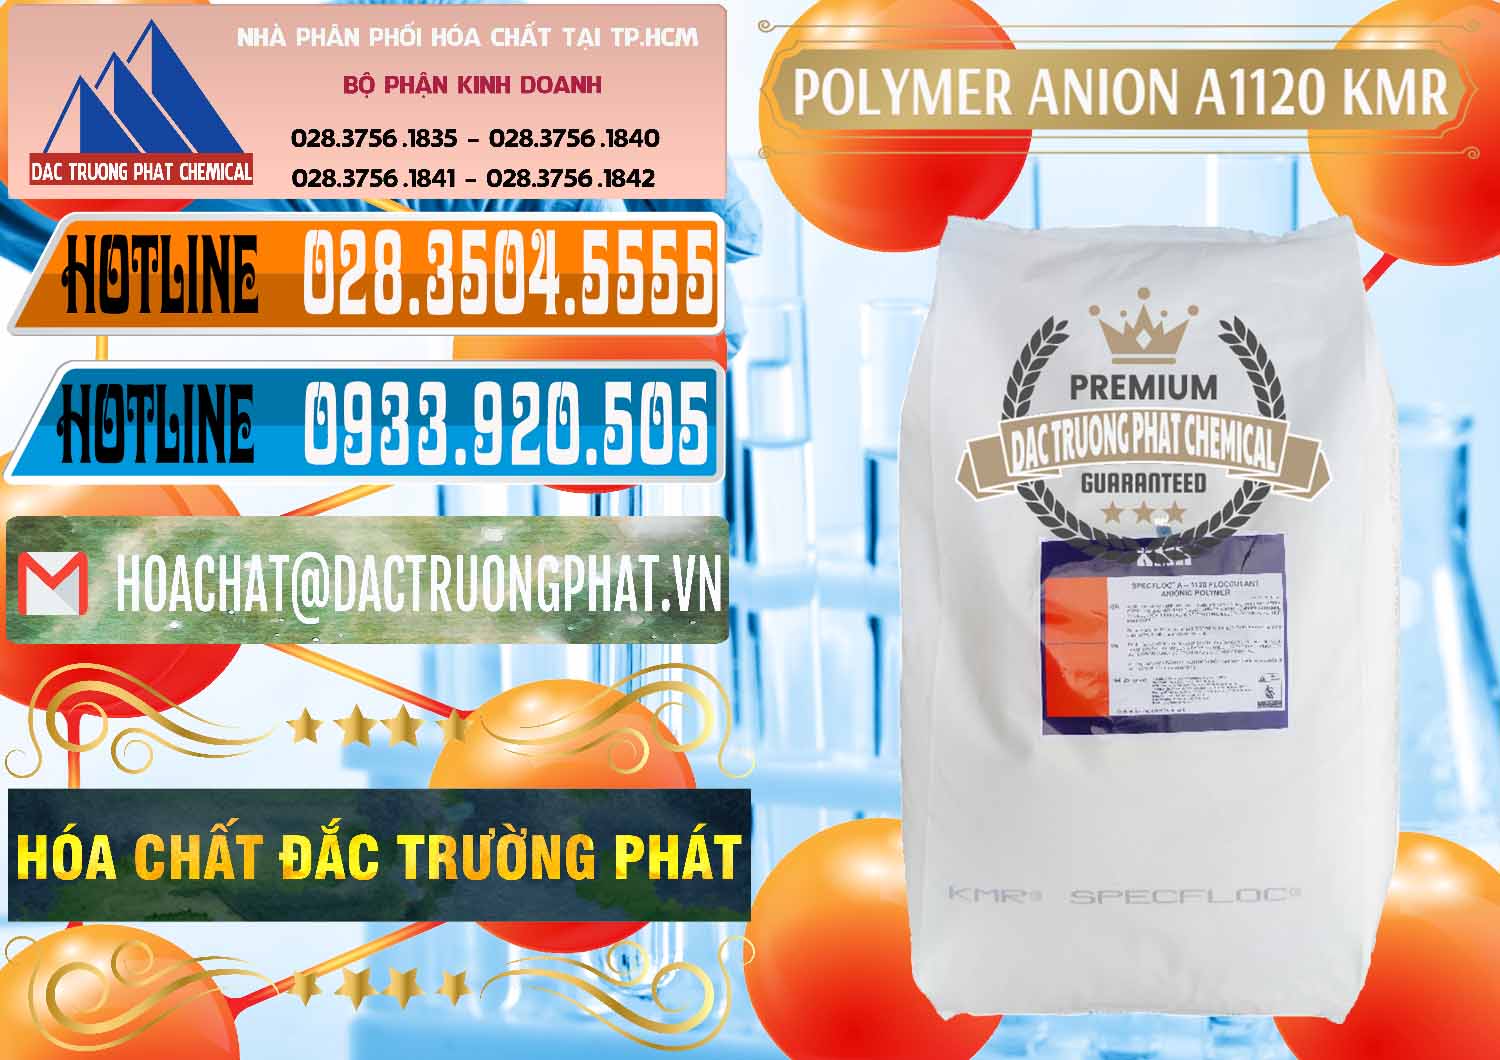 Đơn vị chuyên bán _ cung cấp Polymer Anion A1120 - KMR Anh Quốc England - 0119 - Cty chuyên nhập khẩu ( phân phối ) hóa chất tại TP.HCM - stmp.net